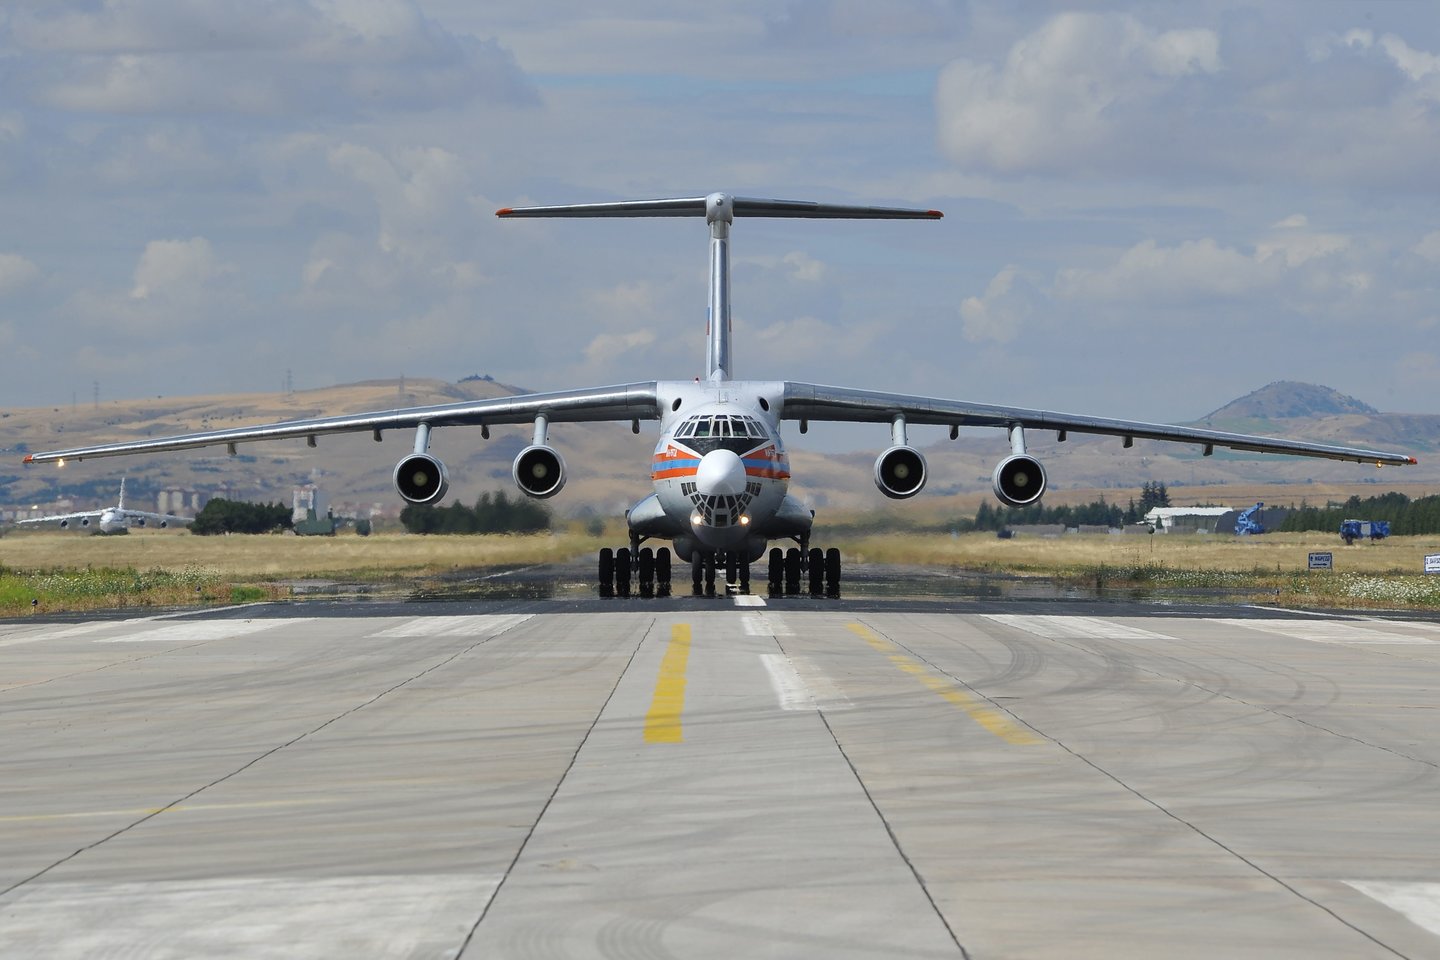 Pirmuosius S-400 komponentus Turkija gavo penktadienį – tą dieną į šalį atskrido trys juos gabenantys Rusijos lėktuvai.<br>AFP/Scanpix nuotr.